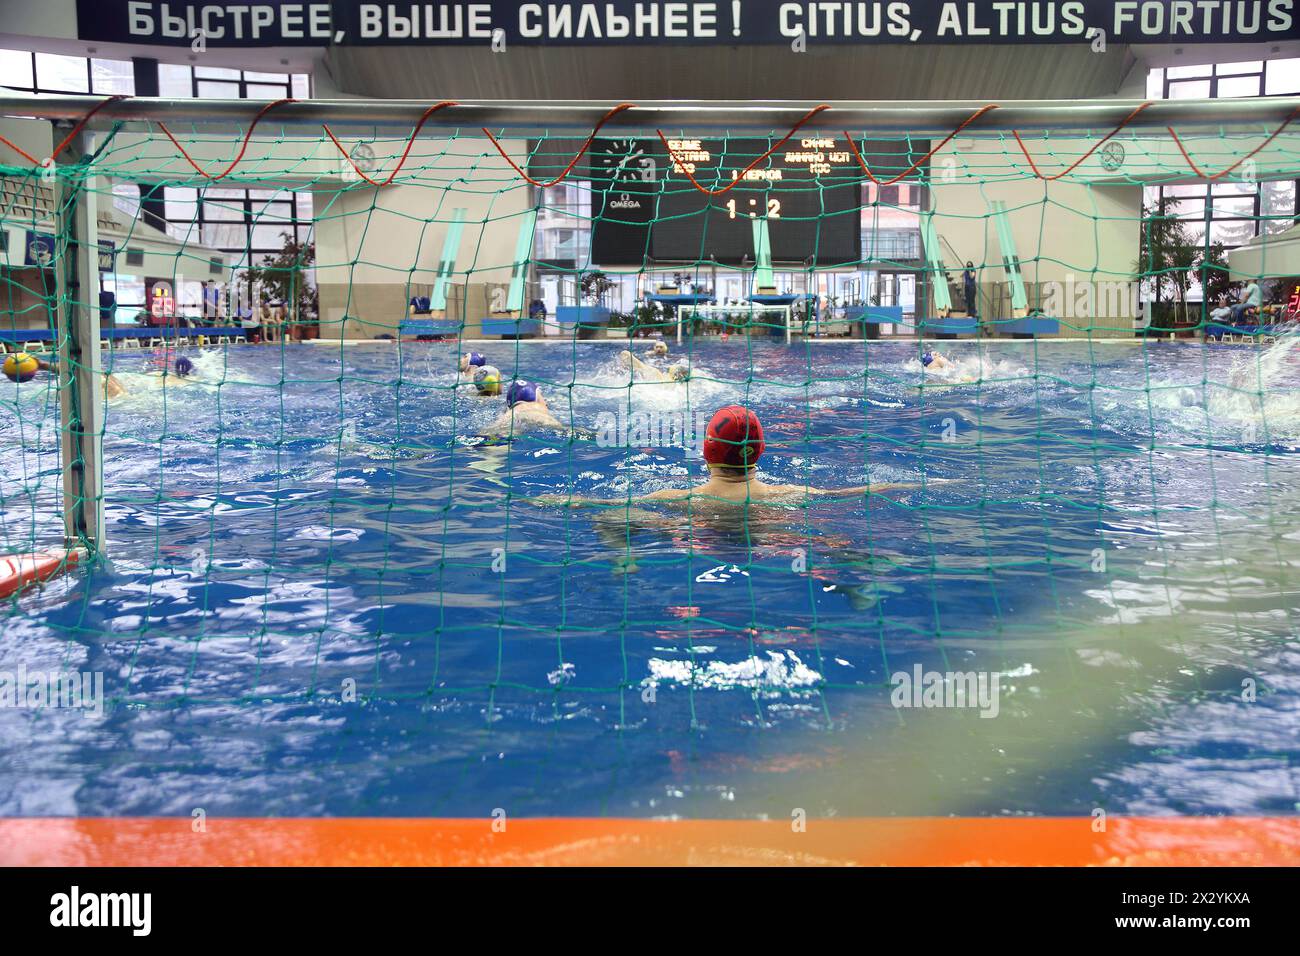 MOSCA - APR 20: Partita delle squadre Astana e Dynamo sull'pallanuoto del complesso sportivo Olimpico, il 20 aprile 2012 a Mosca, Russia. Astana: Dinamo - prima Foto Stock